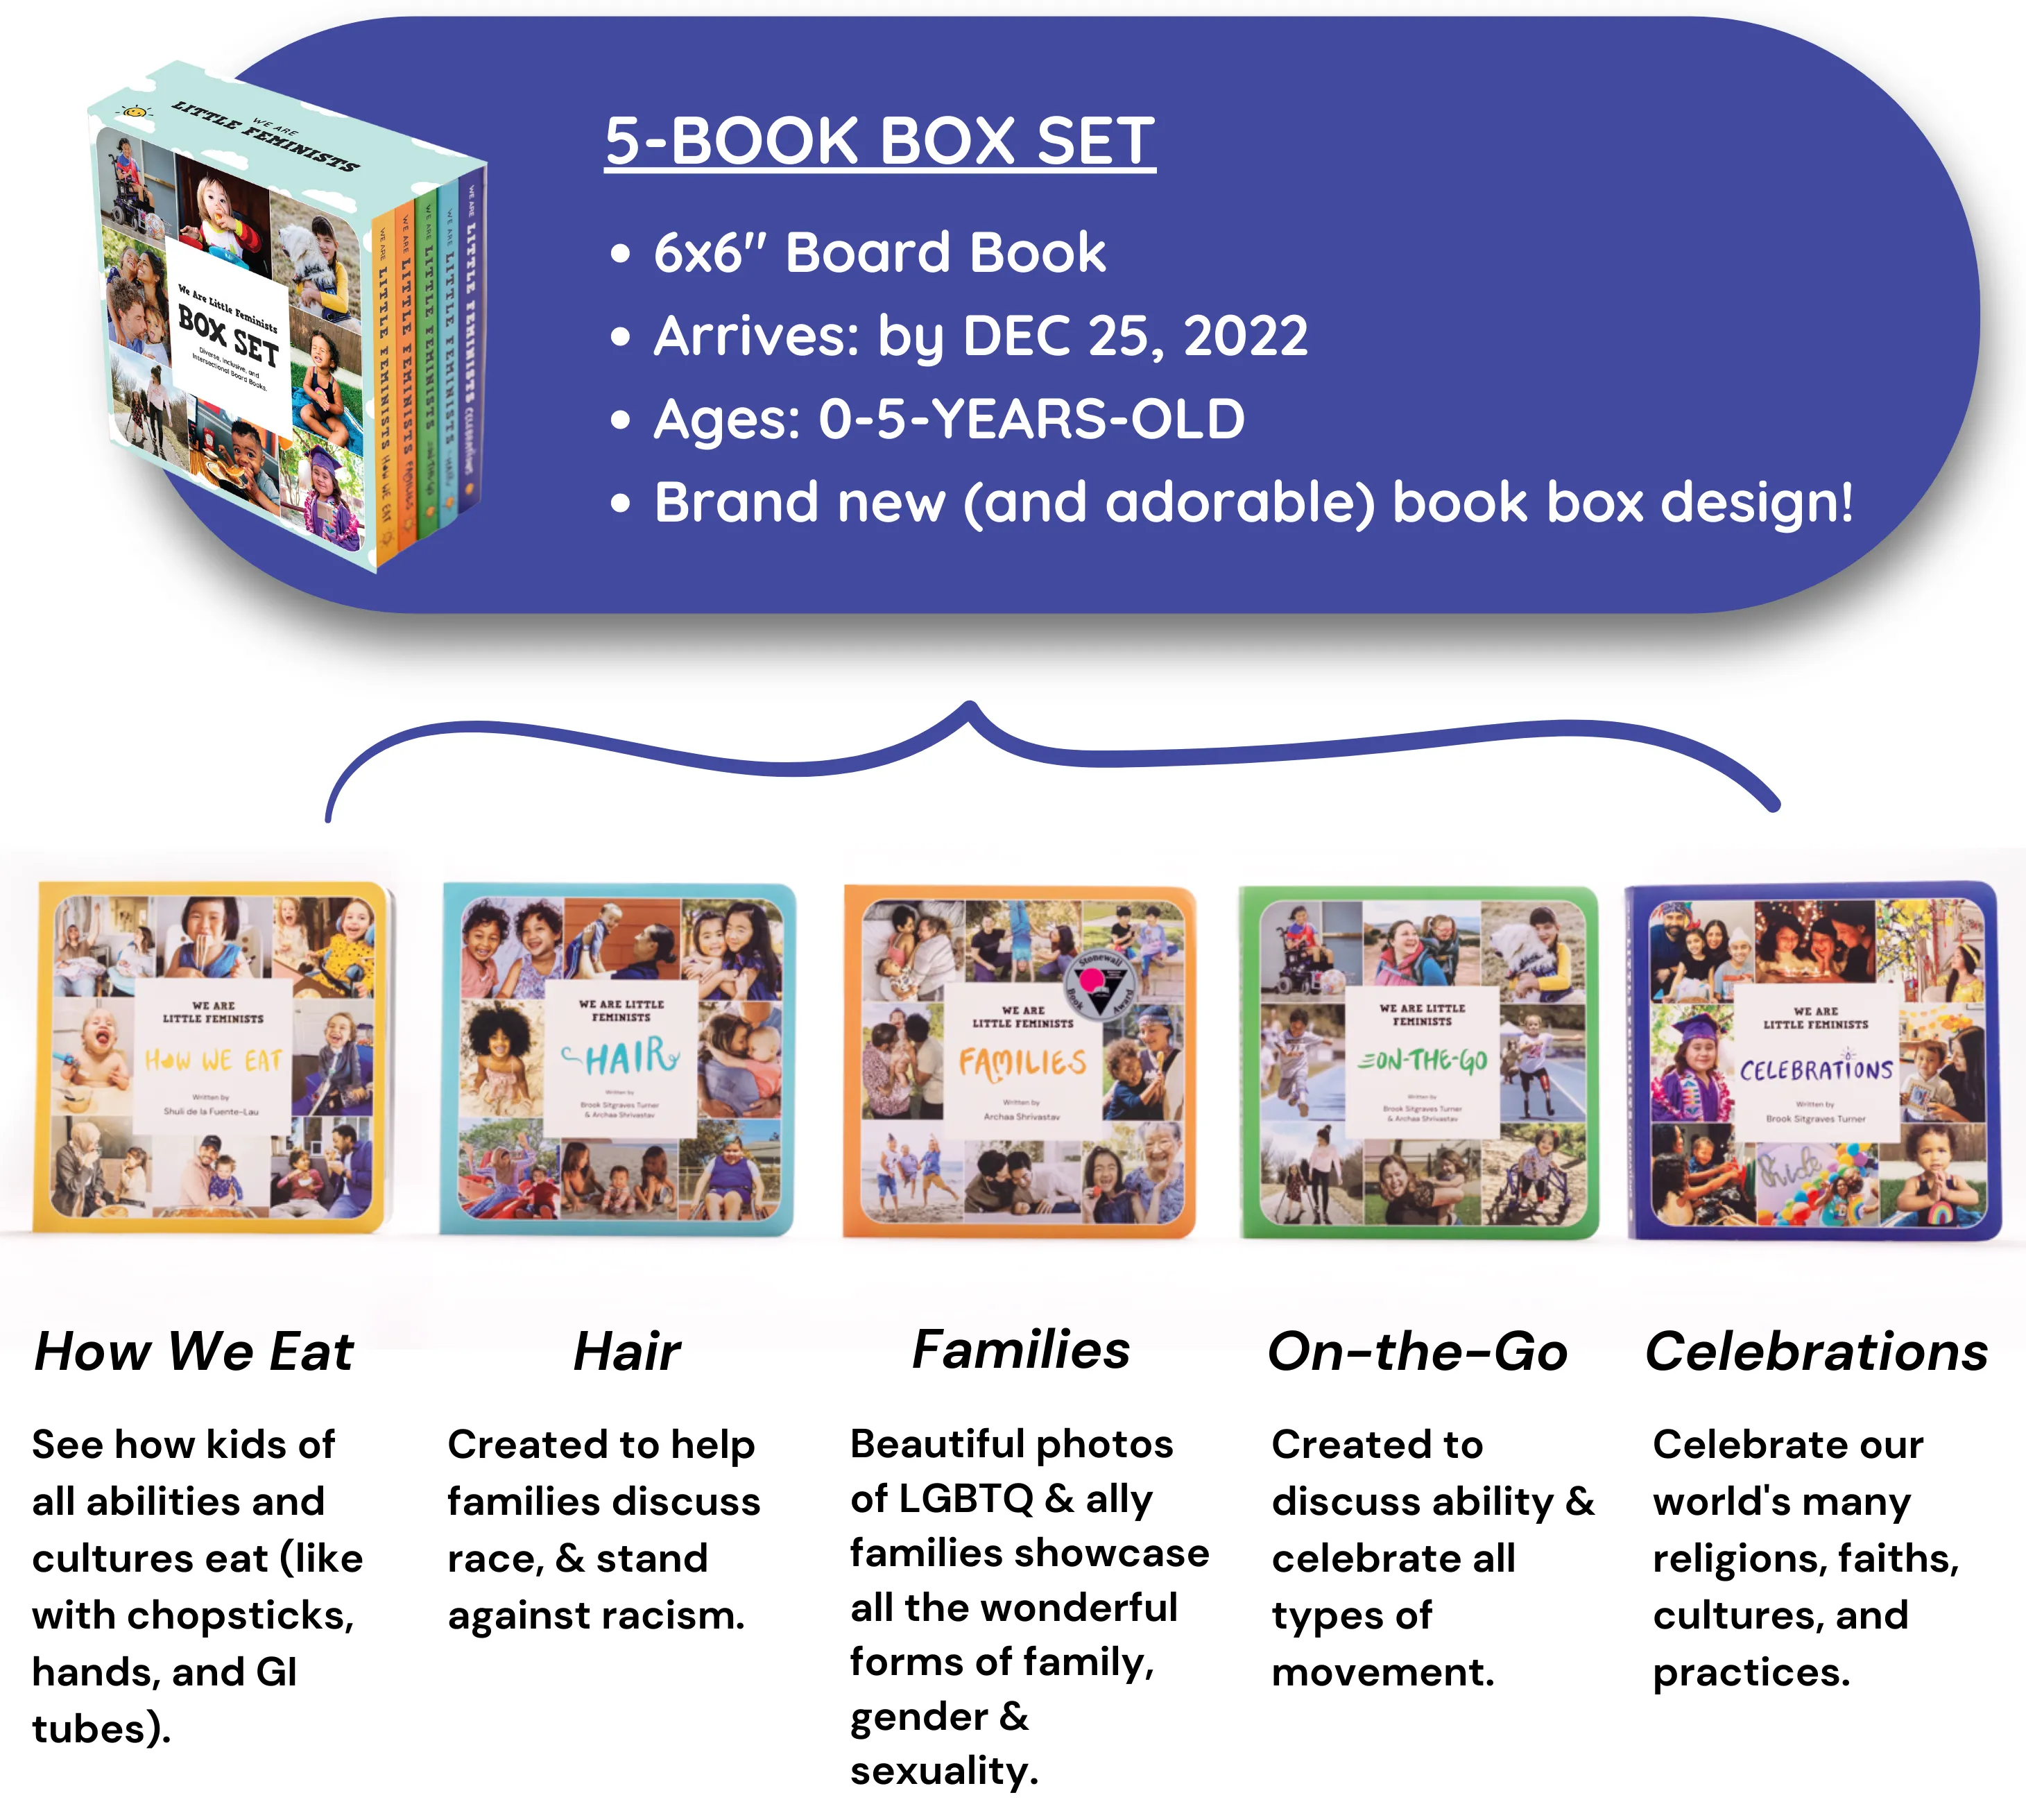 5-Book Box Set reward description